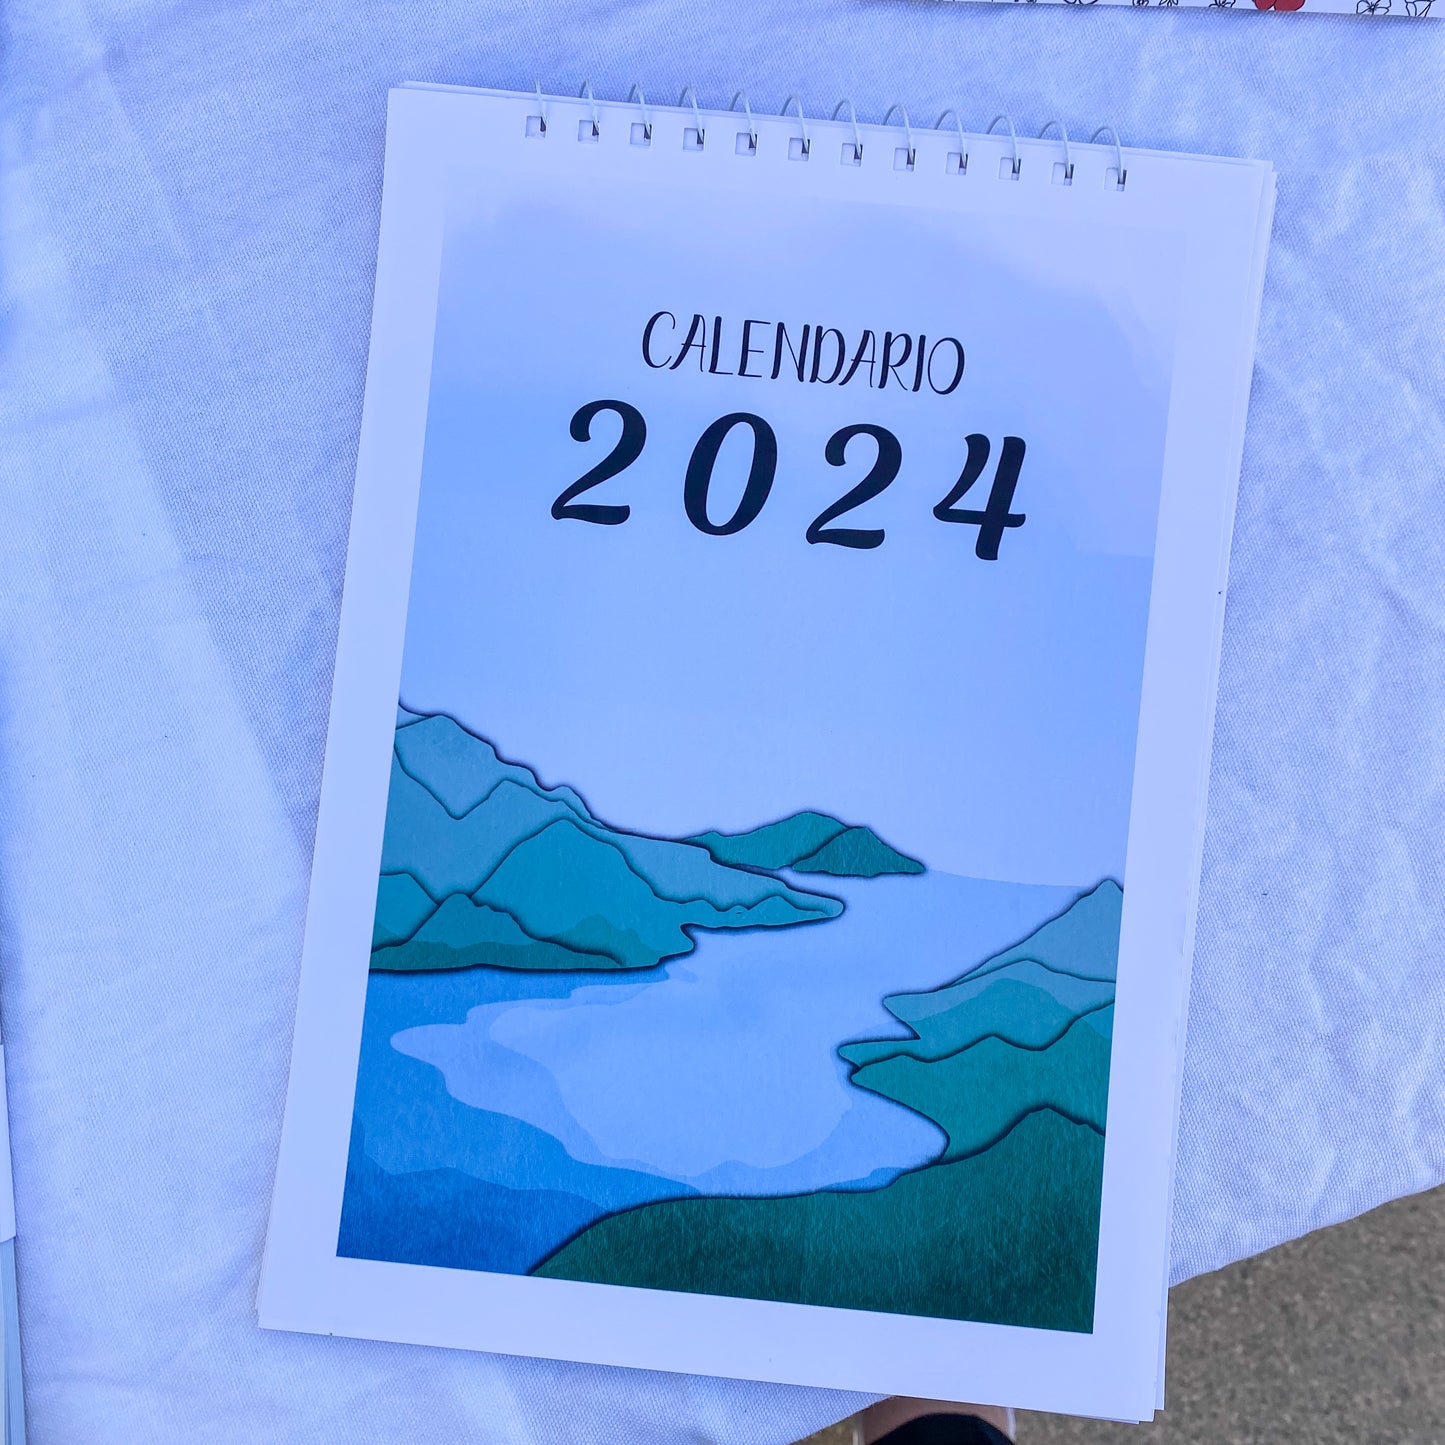 Calendario 2024